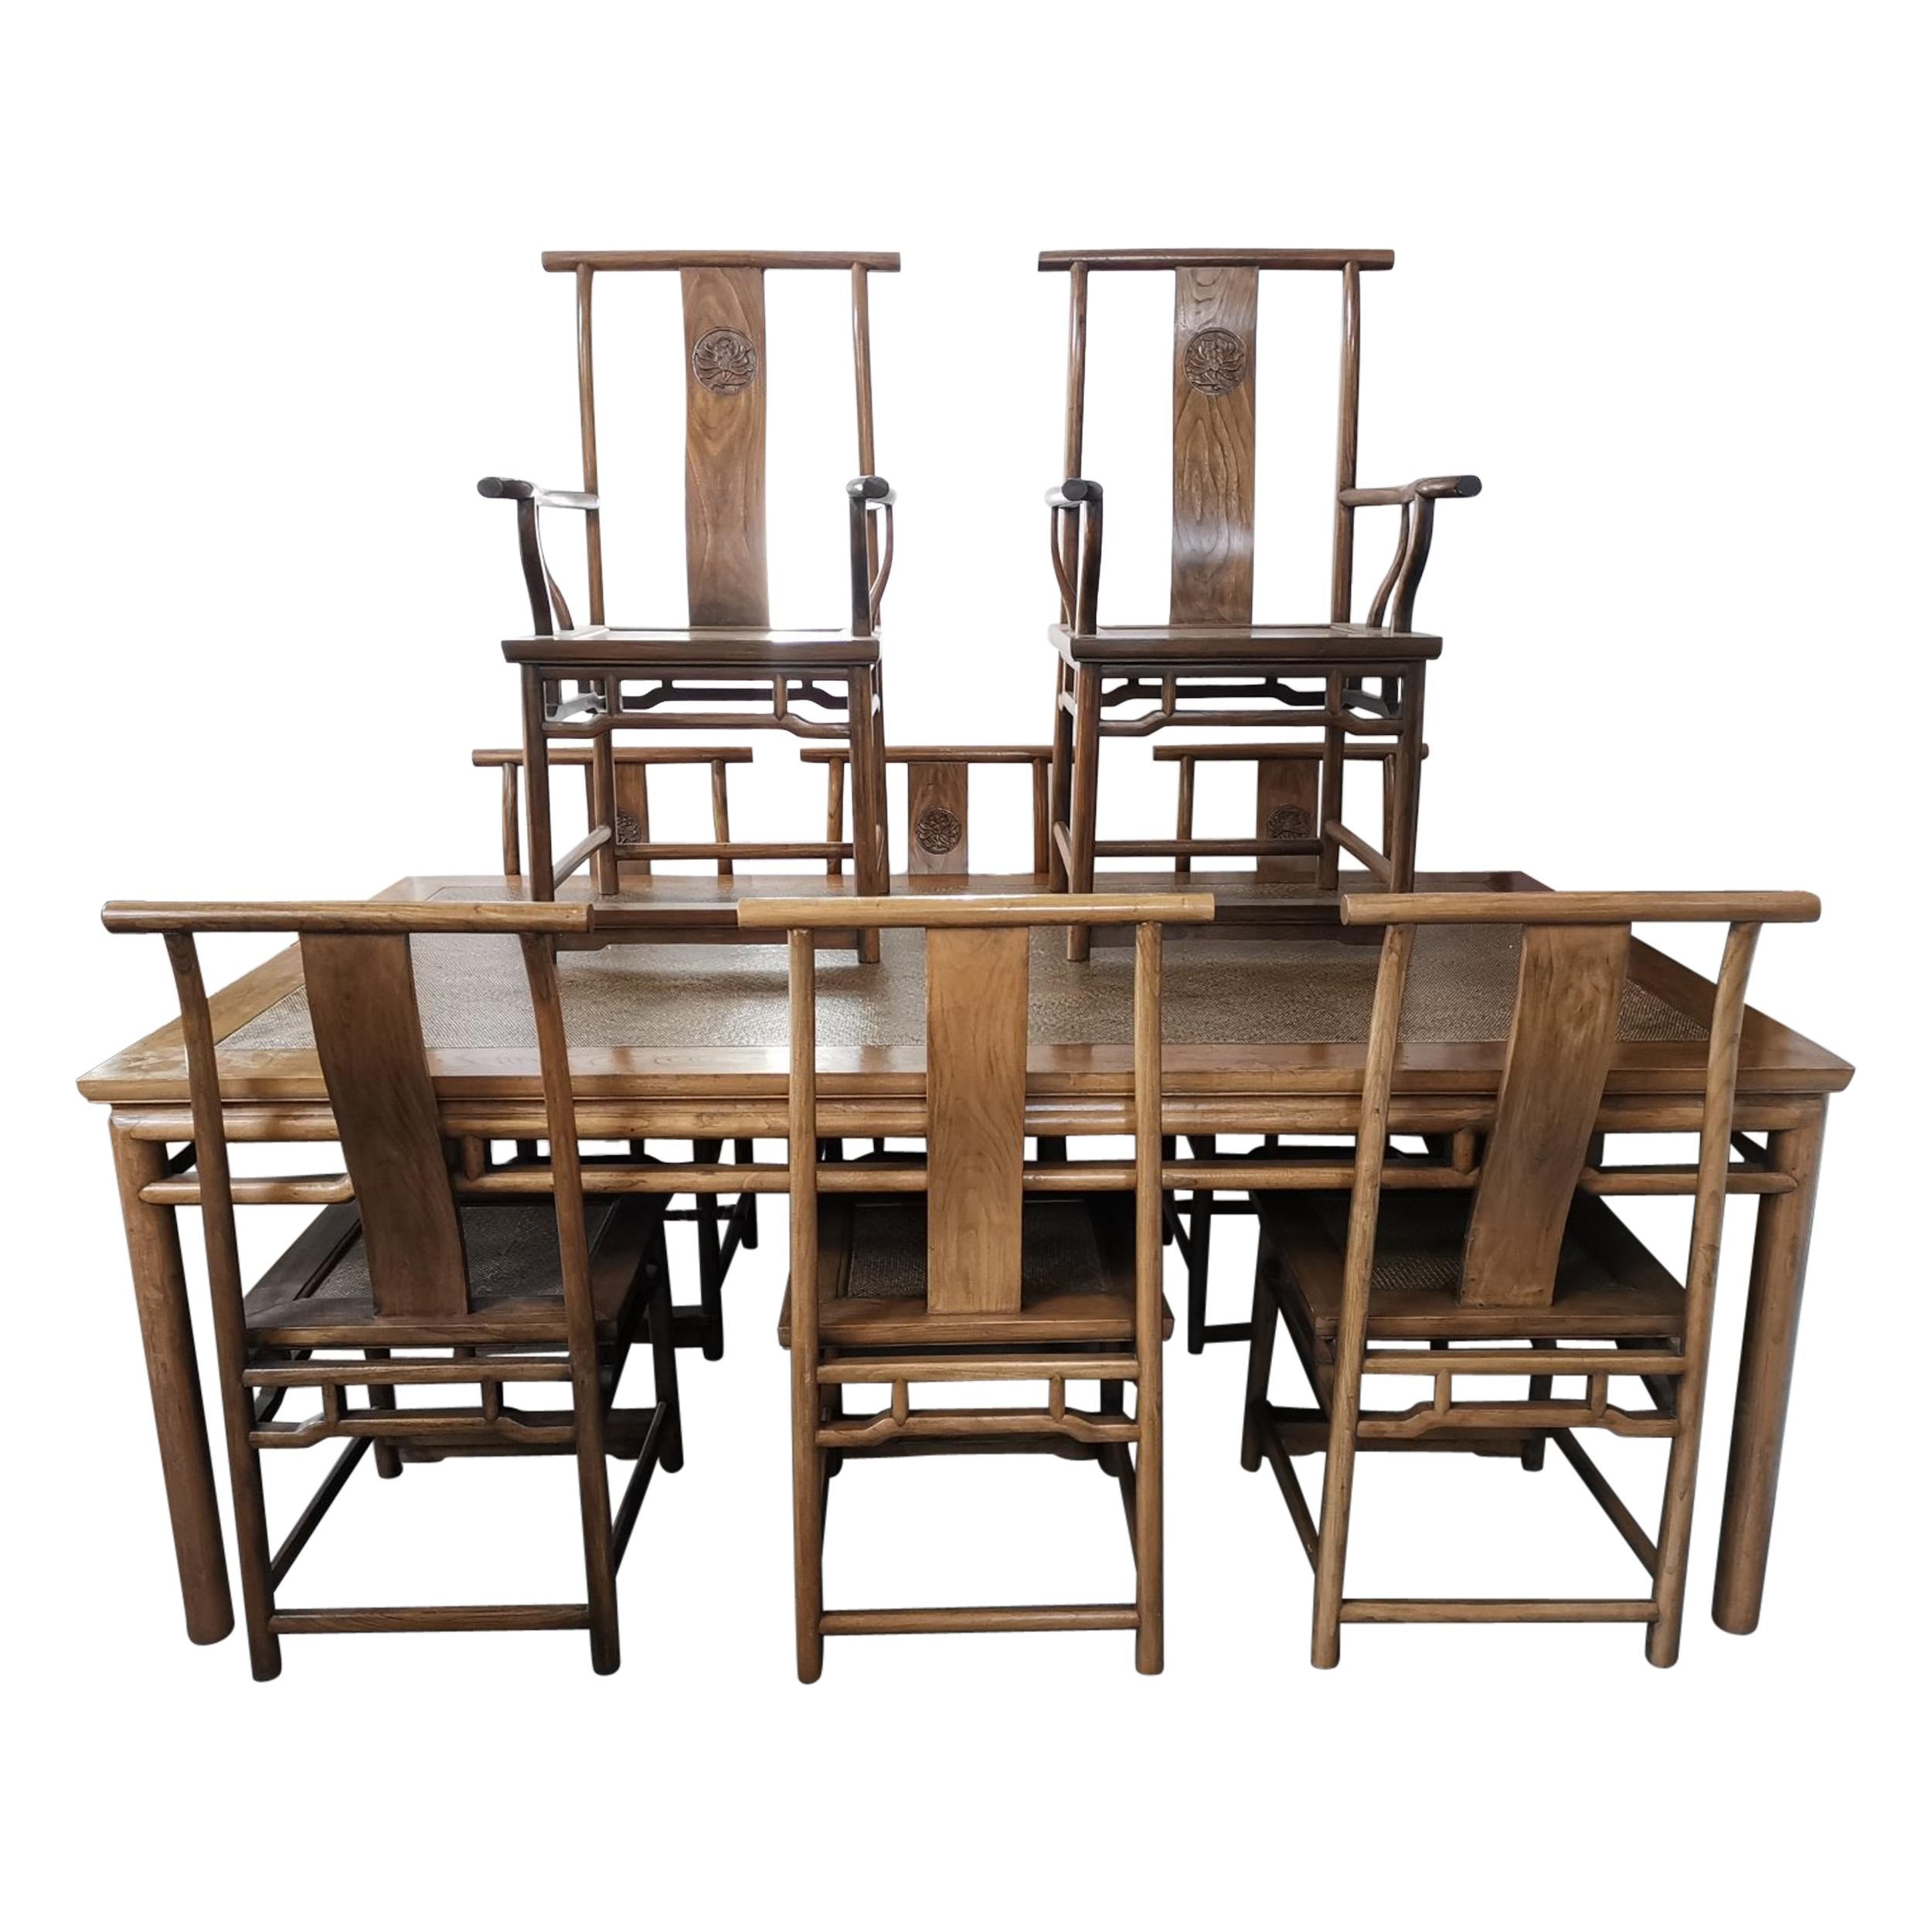 Chinesischer Esstisch aus Hartholz und acht passenden Stühlen, alle mit stilisierter Schnitzerei